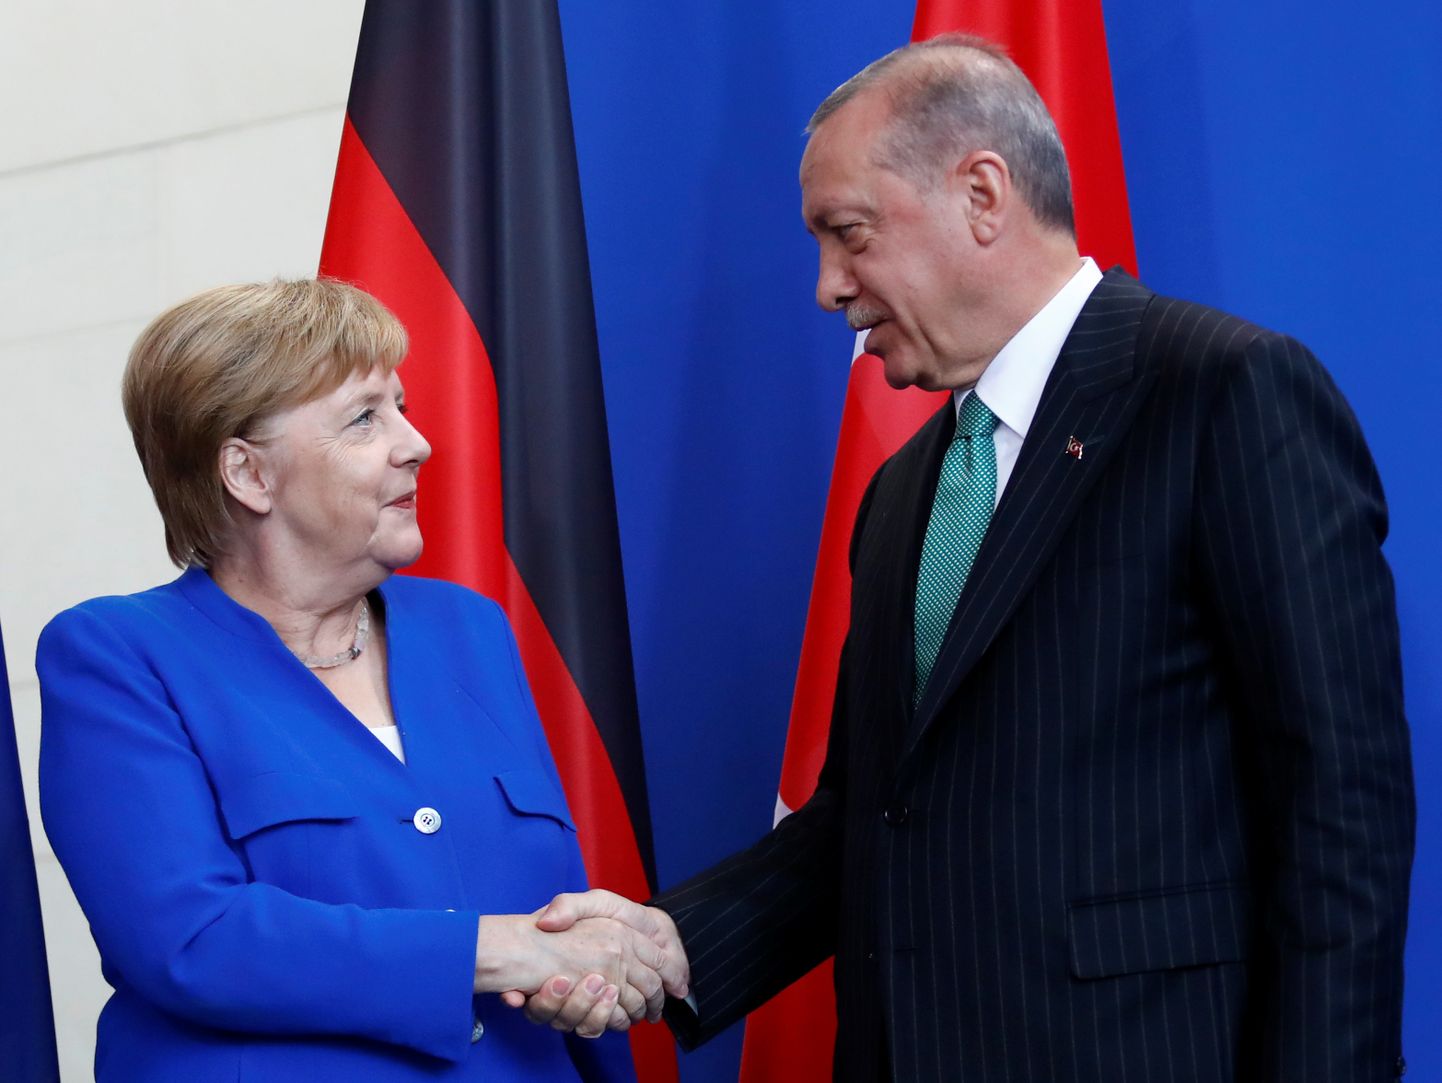 Saksamaa kantsler Angela Merkel ja Türgi president Recep Tayyip Erdoğan kohtusid täna Berliinis.